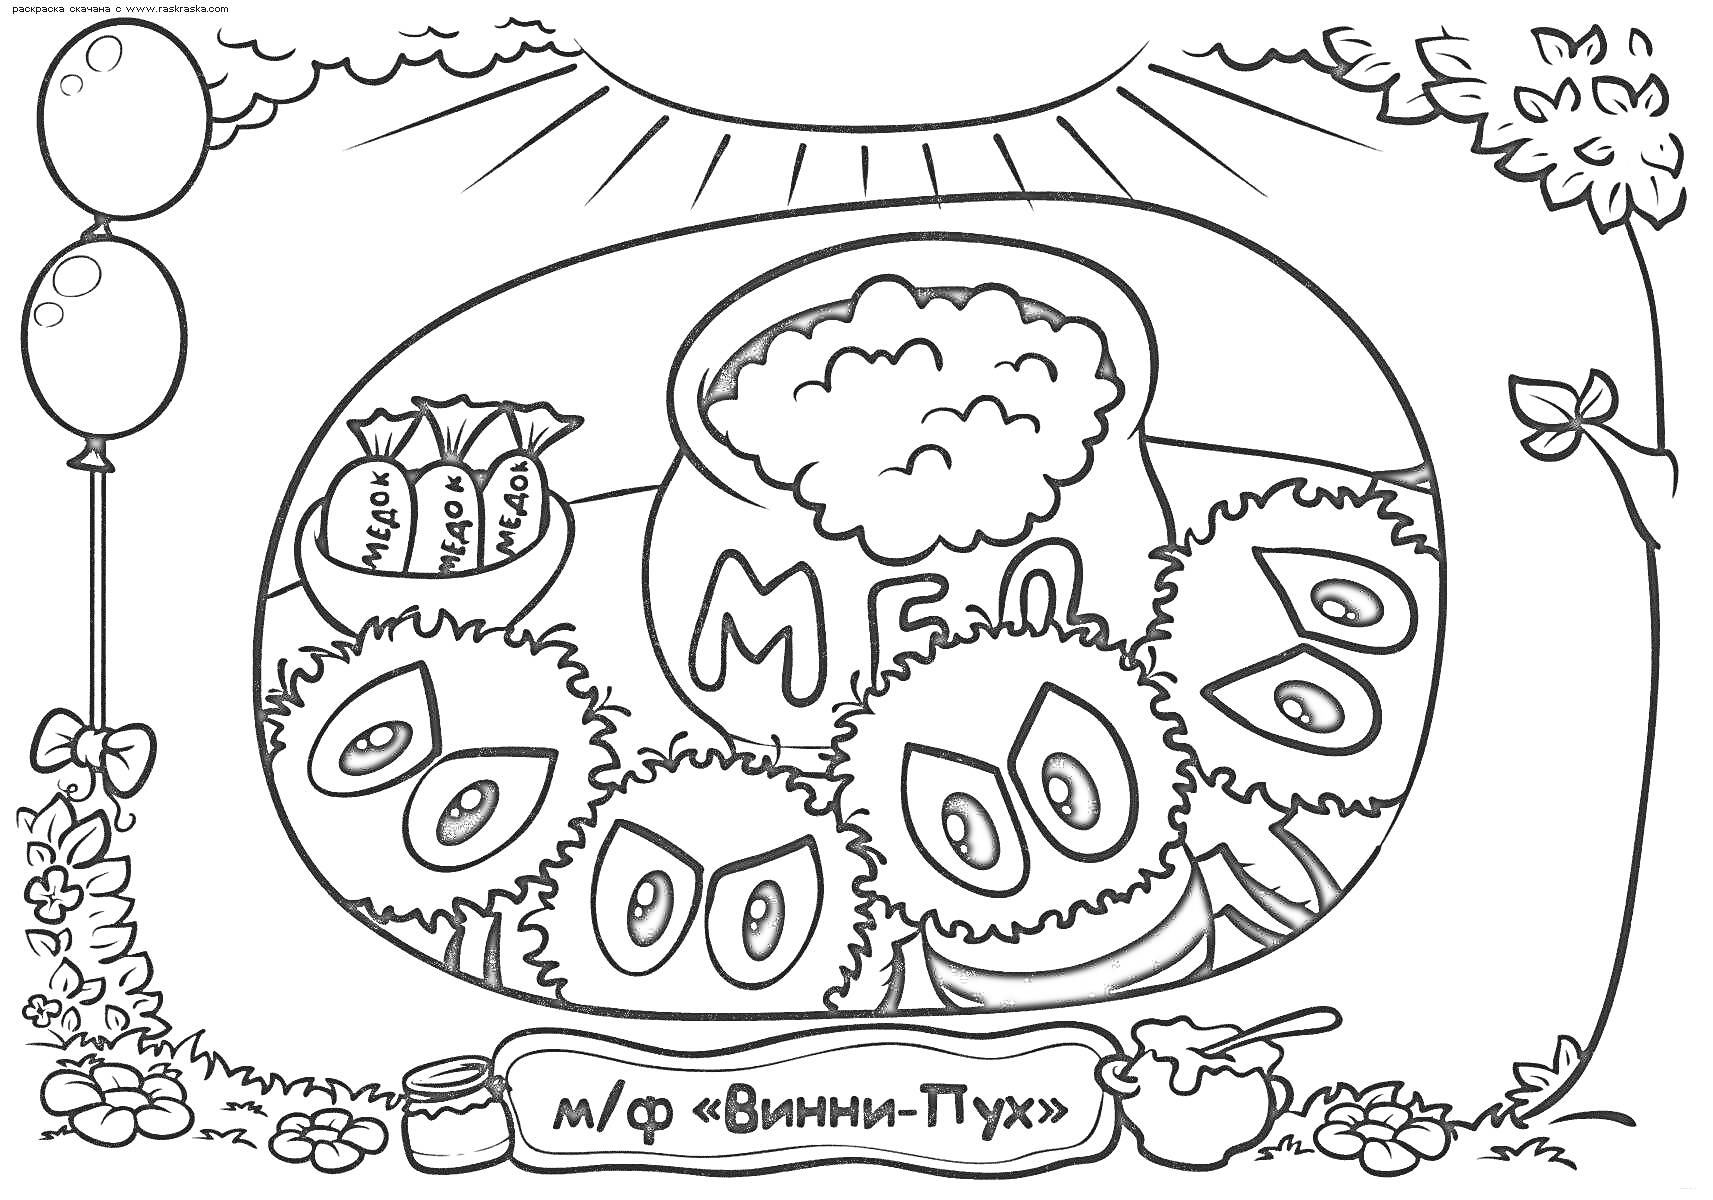 Раскраска Винни-Пух и его друзья с банкой мёда, воздушные шары и горшочек с медом